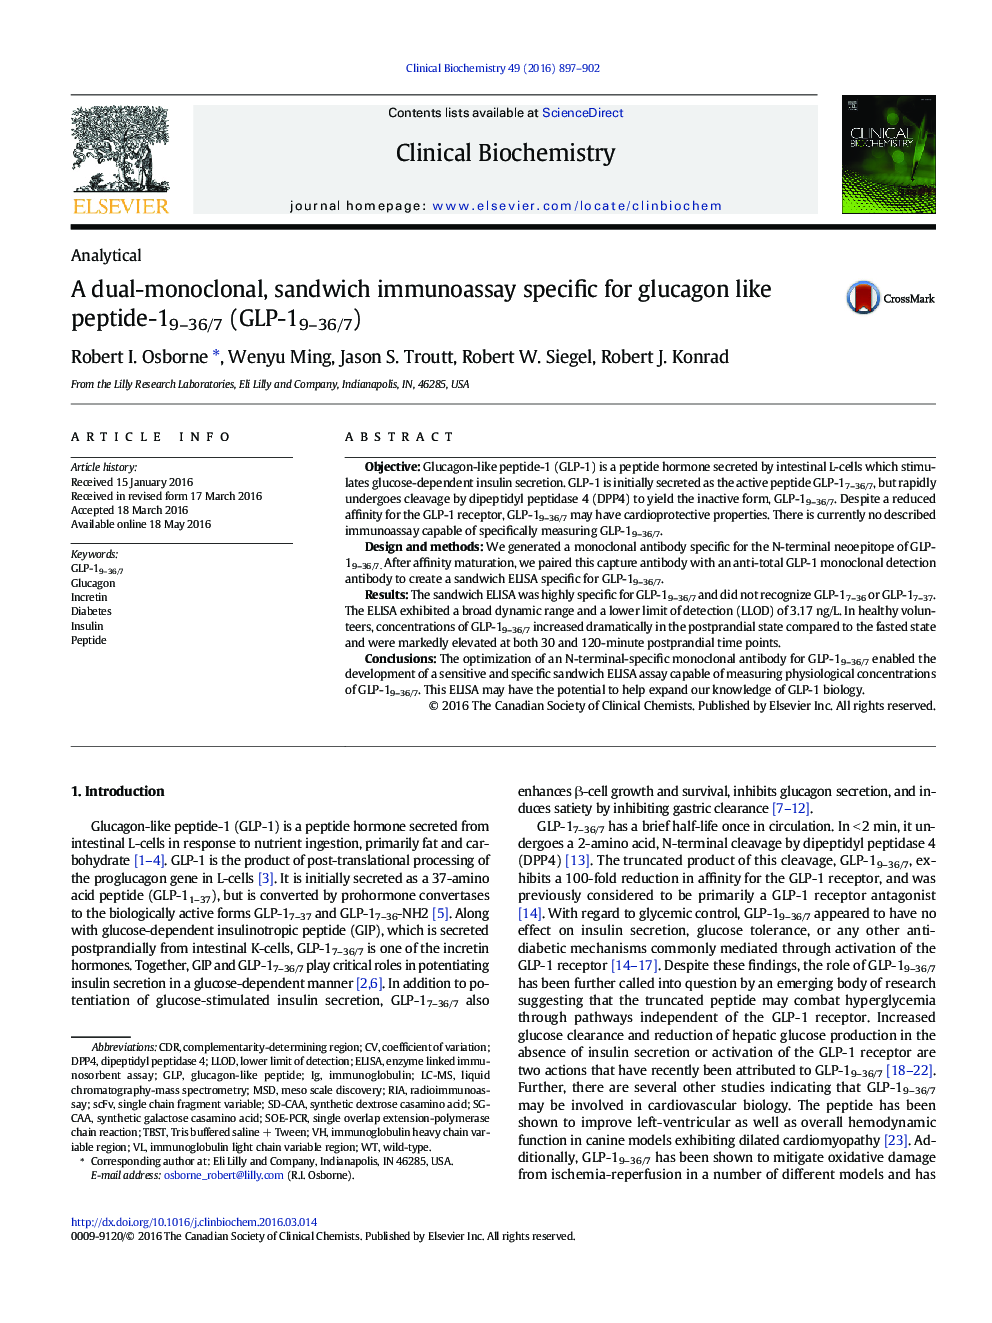 یک سنجش ایمنی ساندویچی، مونوکلونال دوگانه خاص برای  پپتید 19-36 / 7 (GLP-19-36 / 7) گلوکاگون مانند